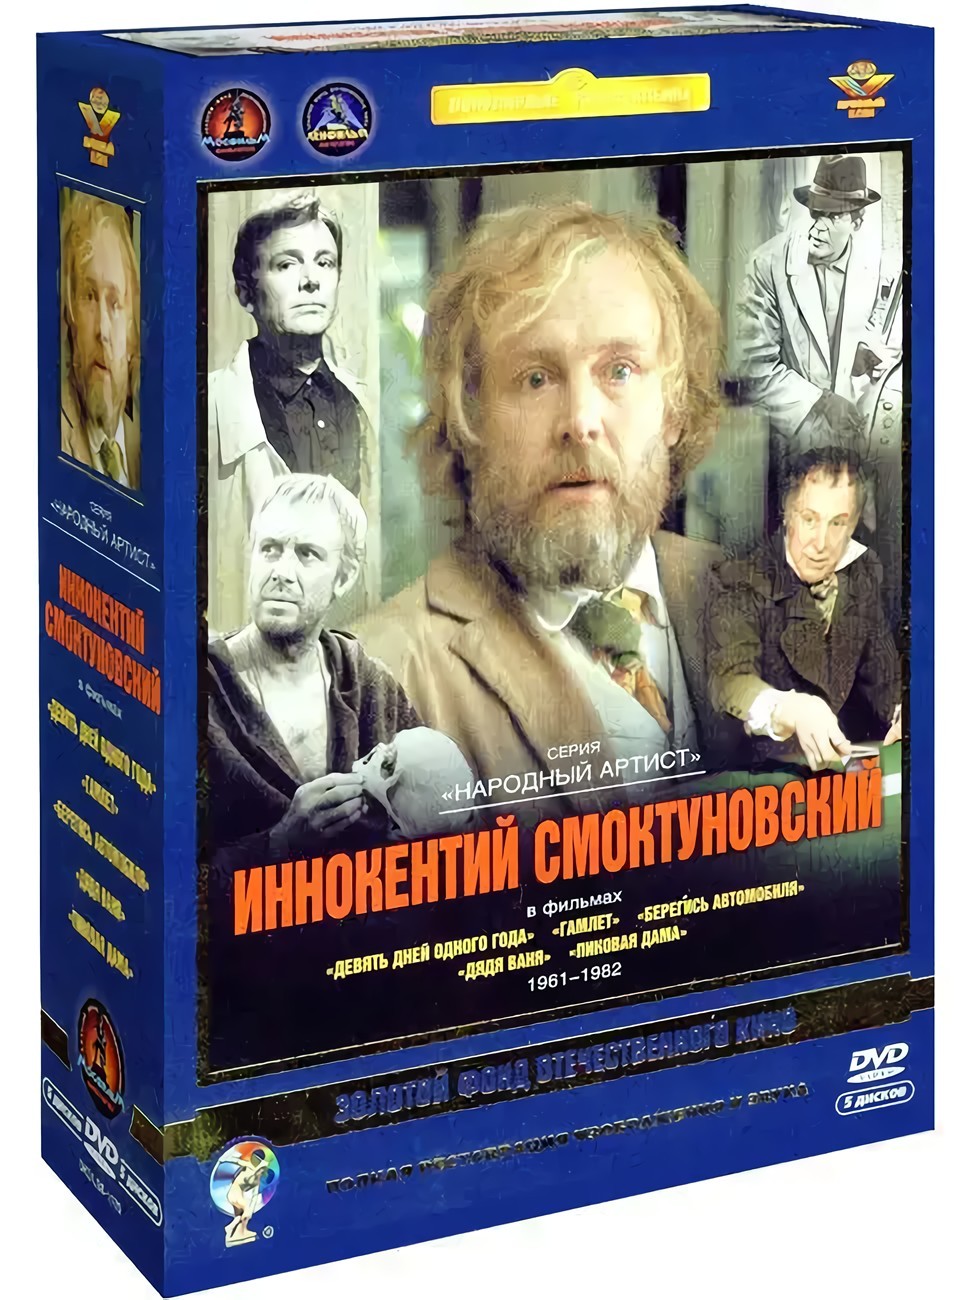 Фильмы с участием Иннокентия Смоктуновского (5 DVD)